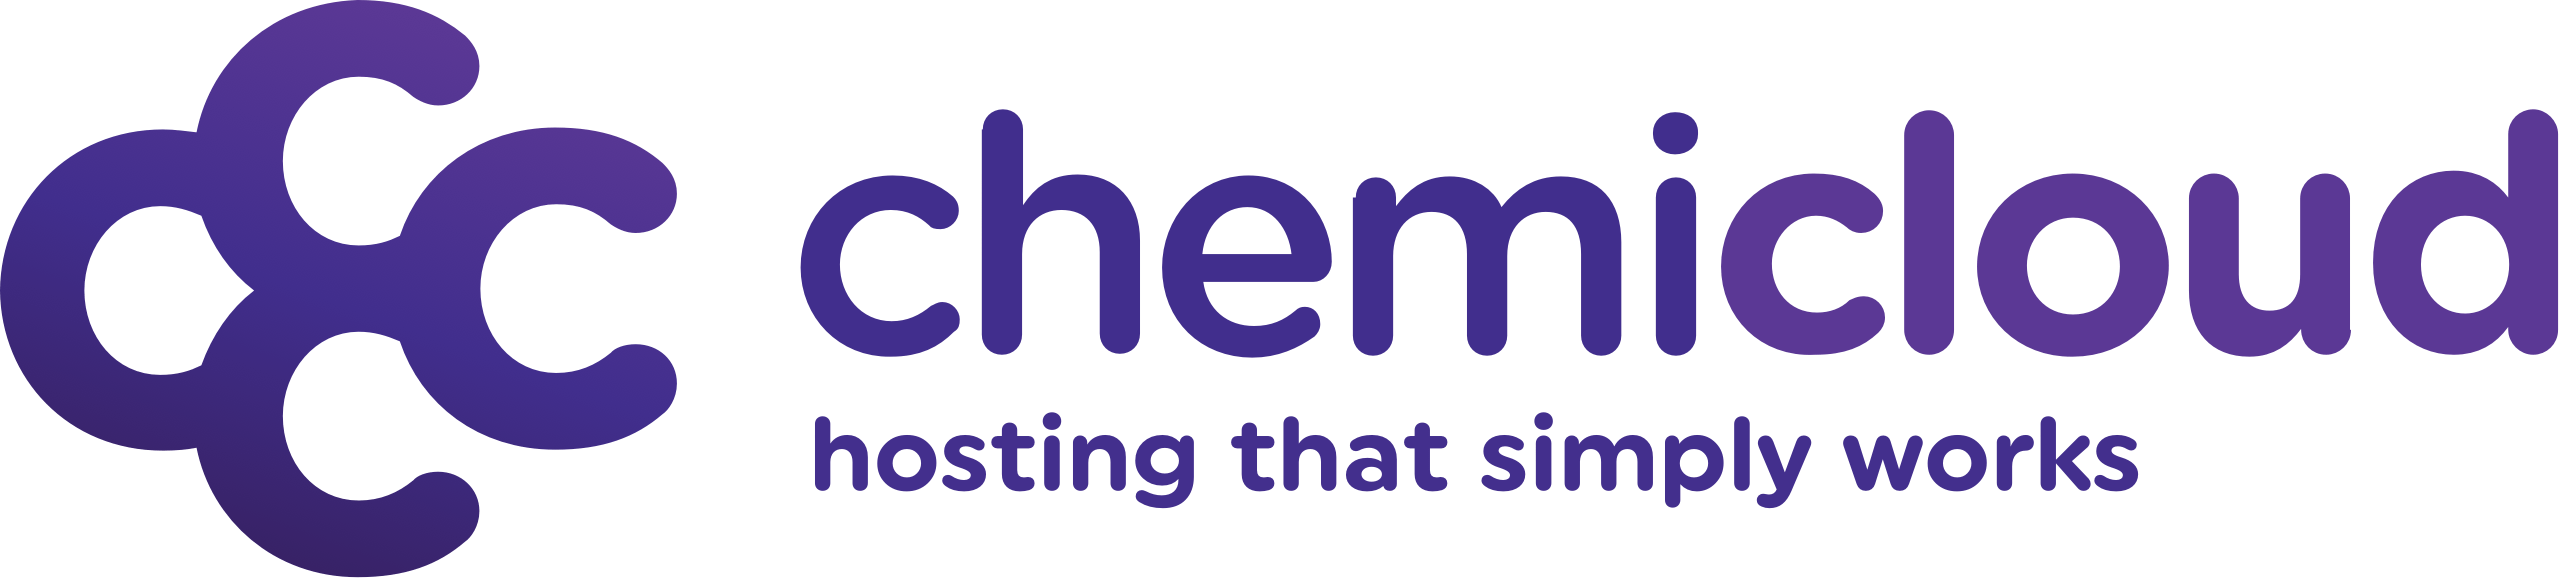 Chemicloud logo